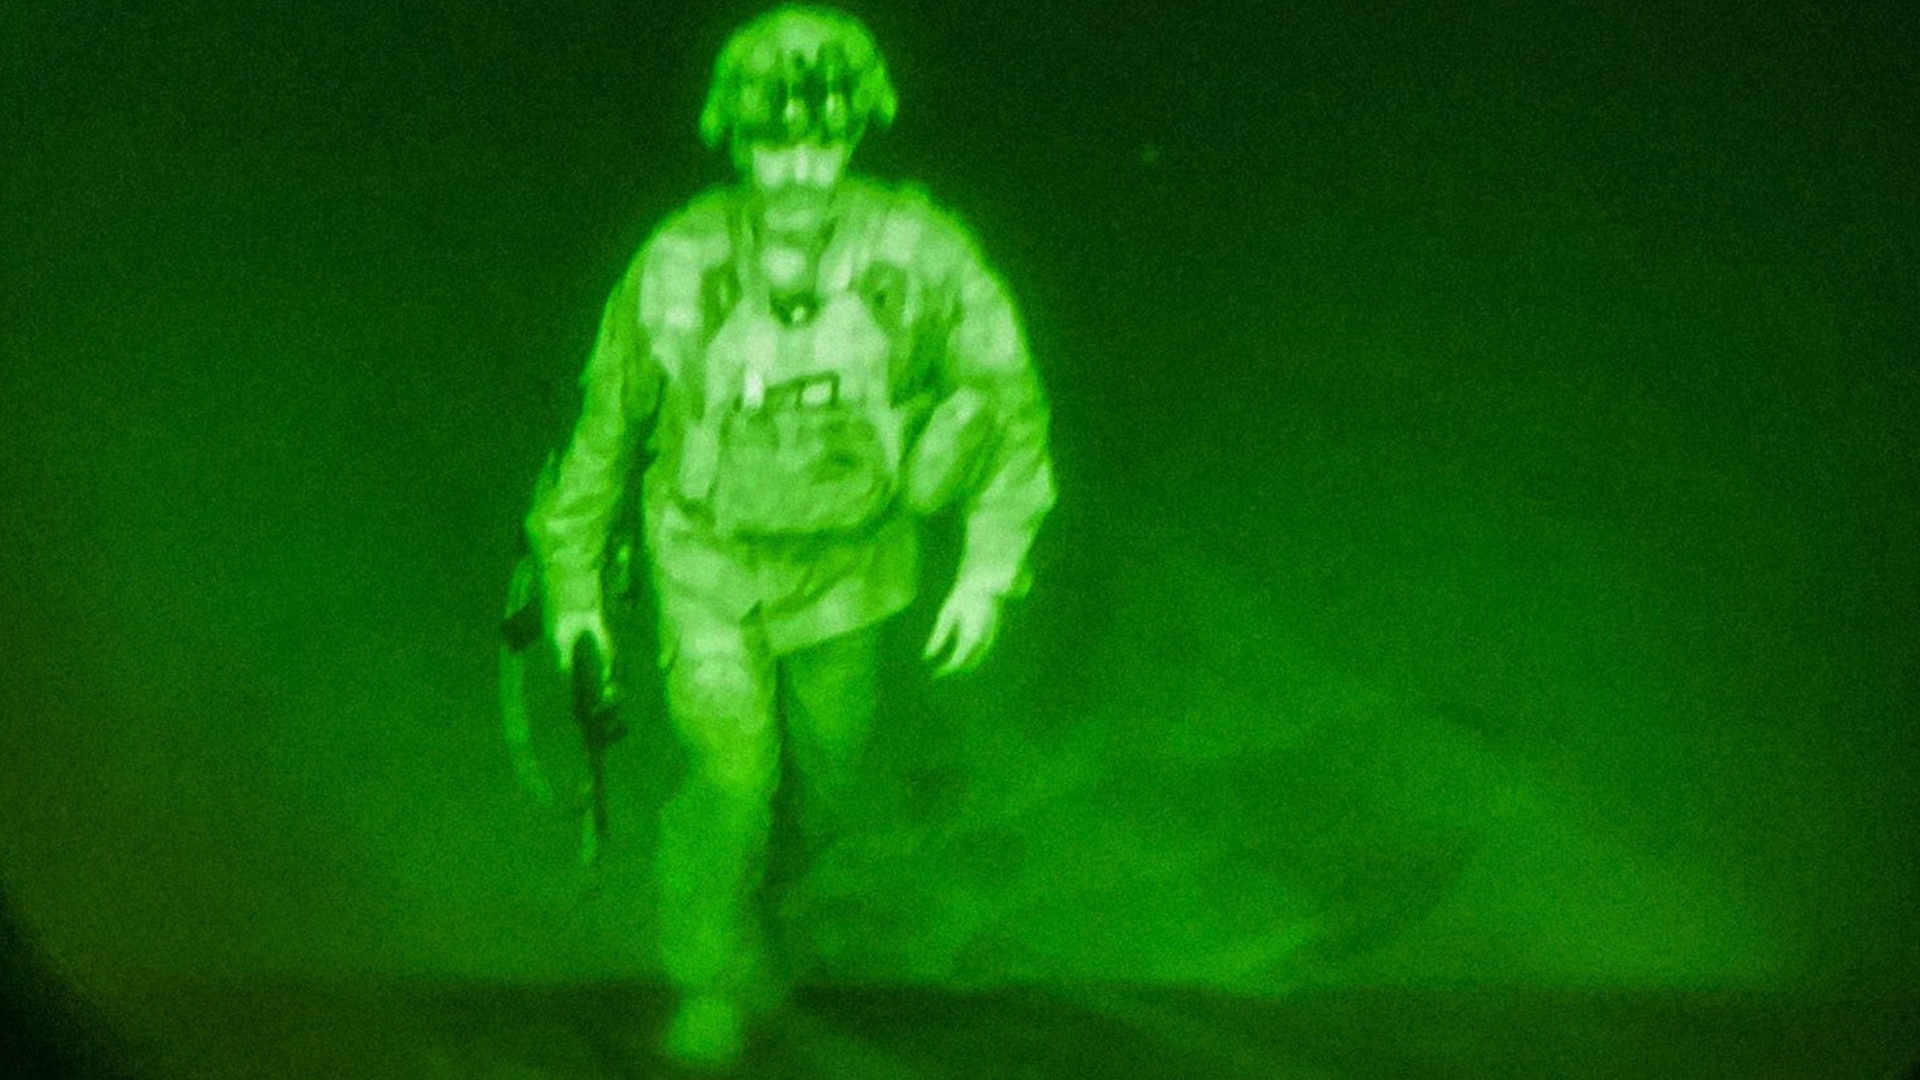 Last American Soldier leaves Afghanistan